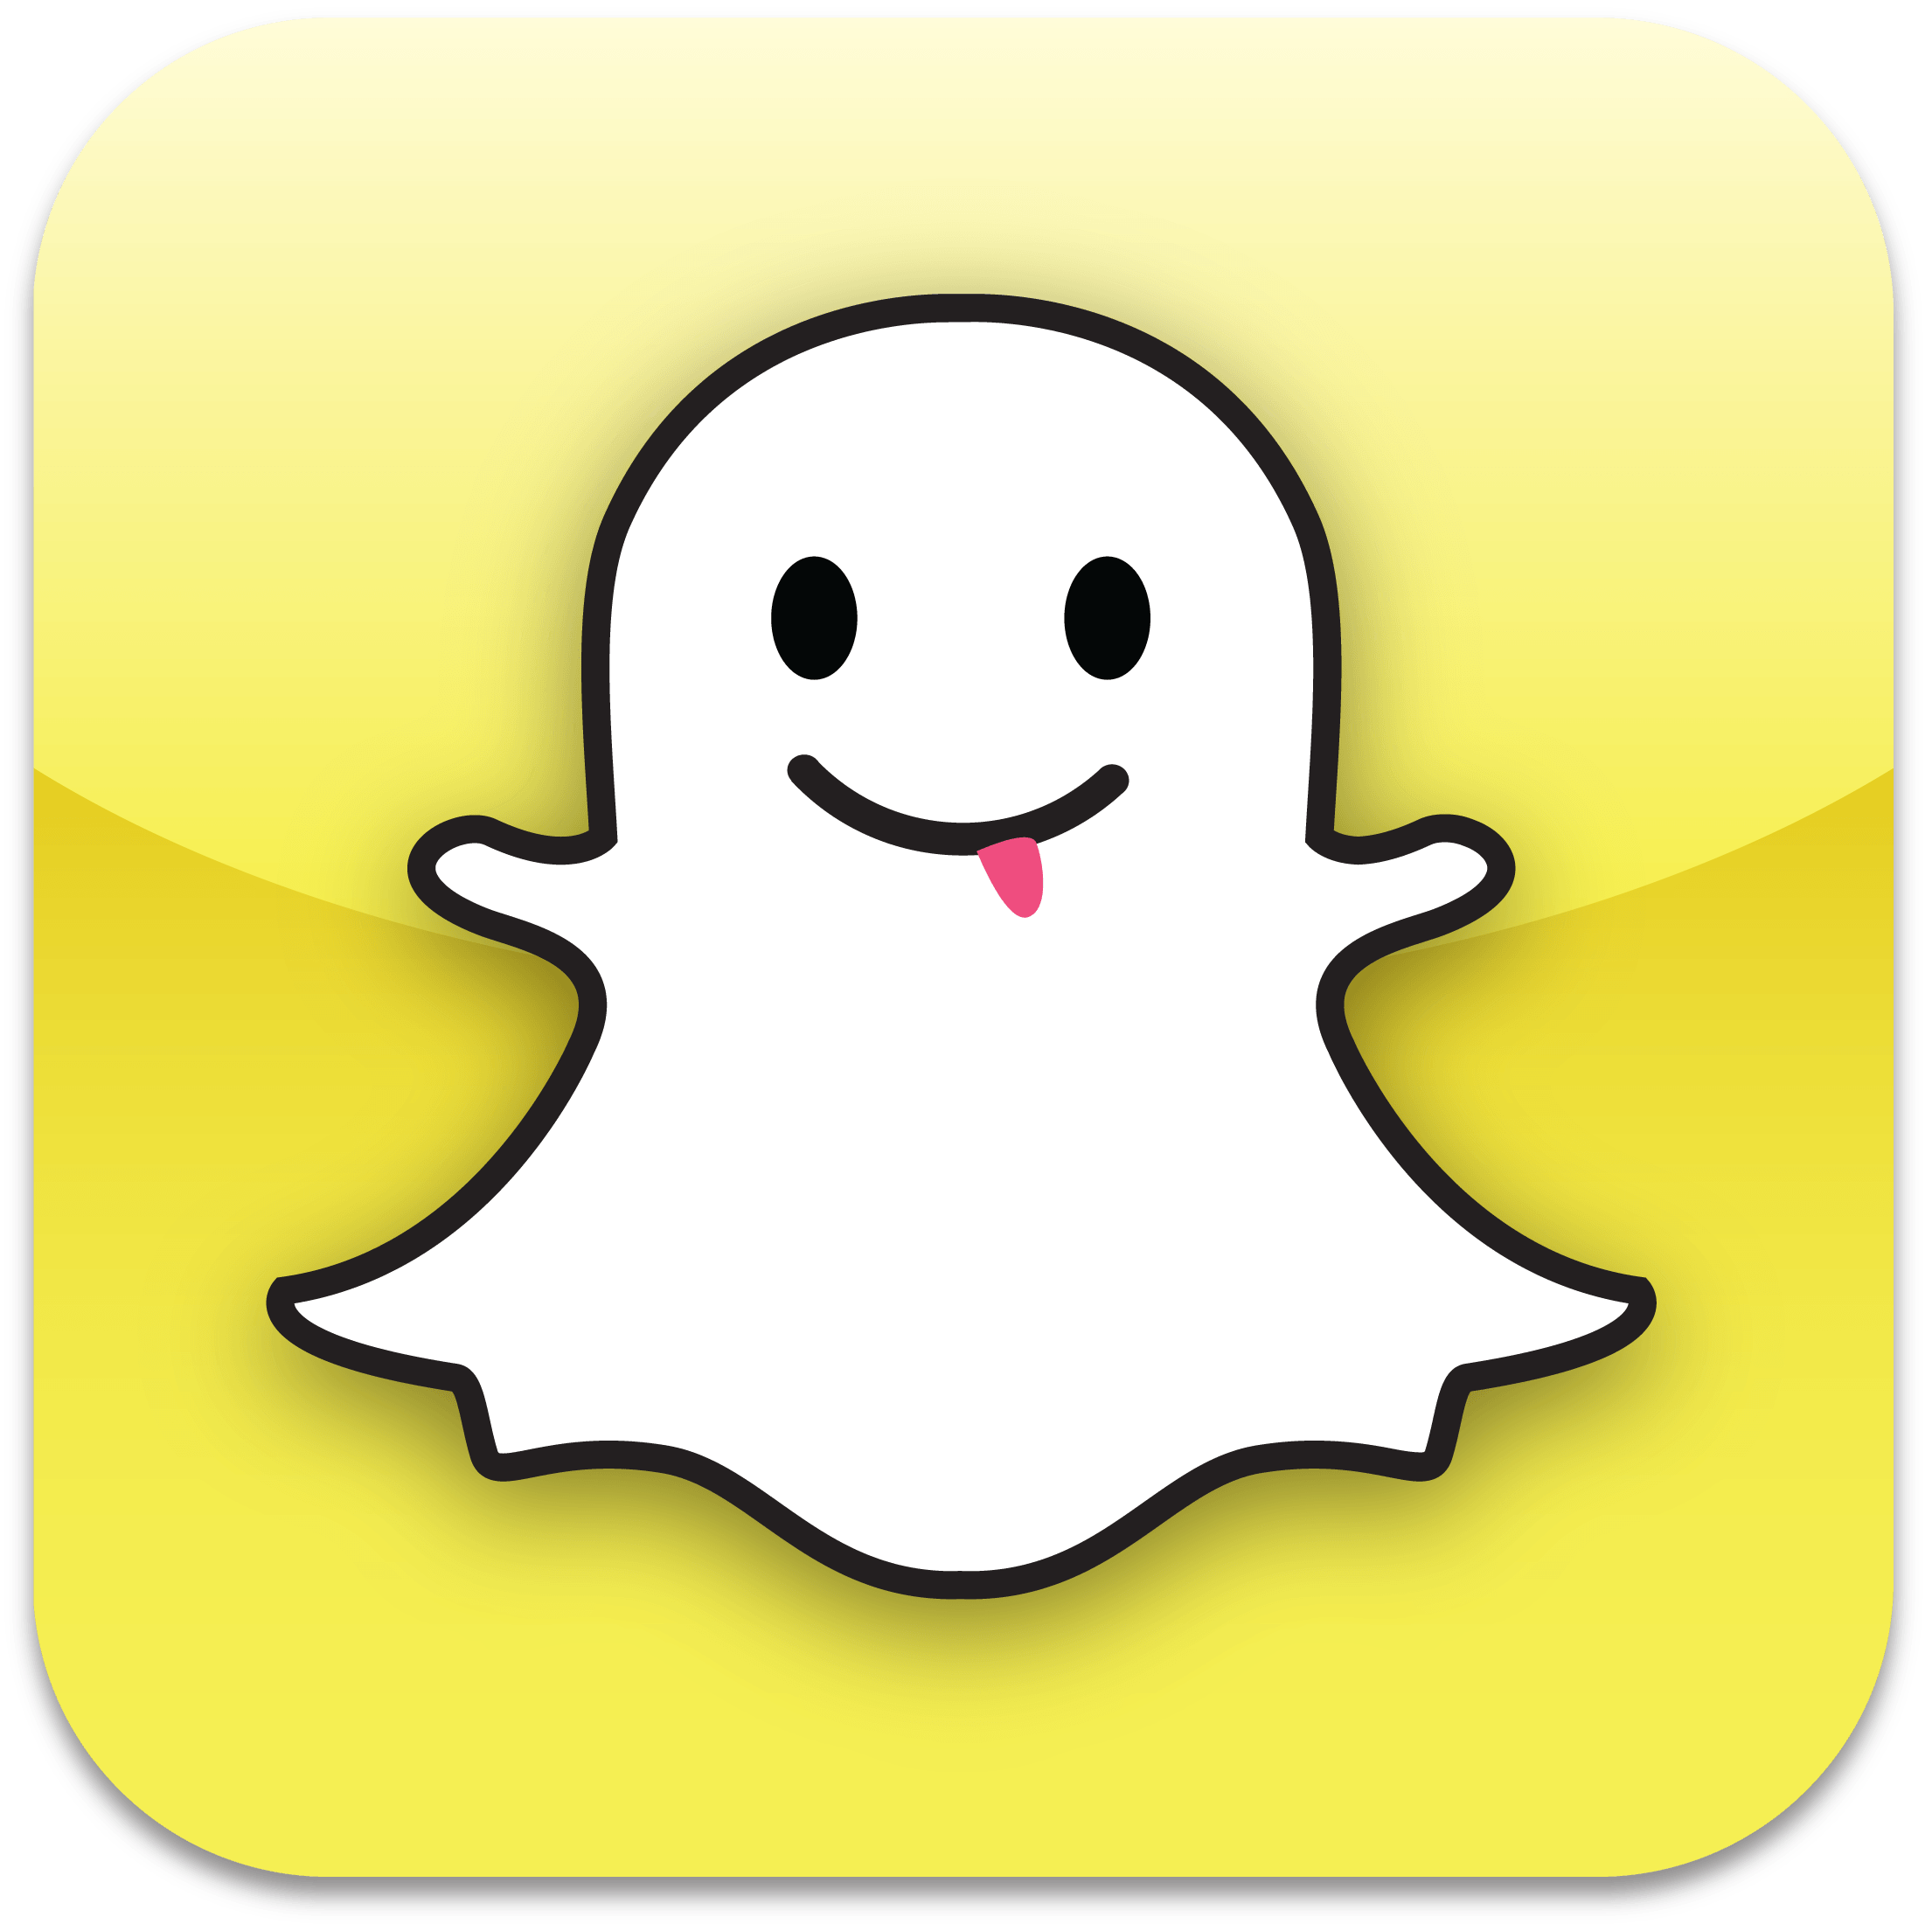 Snapchat App Logo - Snapchat | Logopedia | FANDOM powered by Wikia